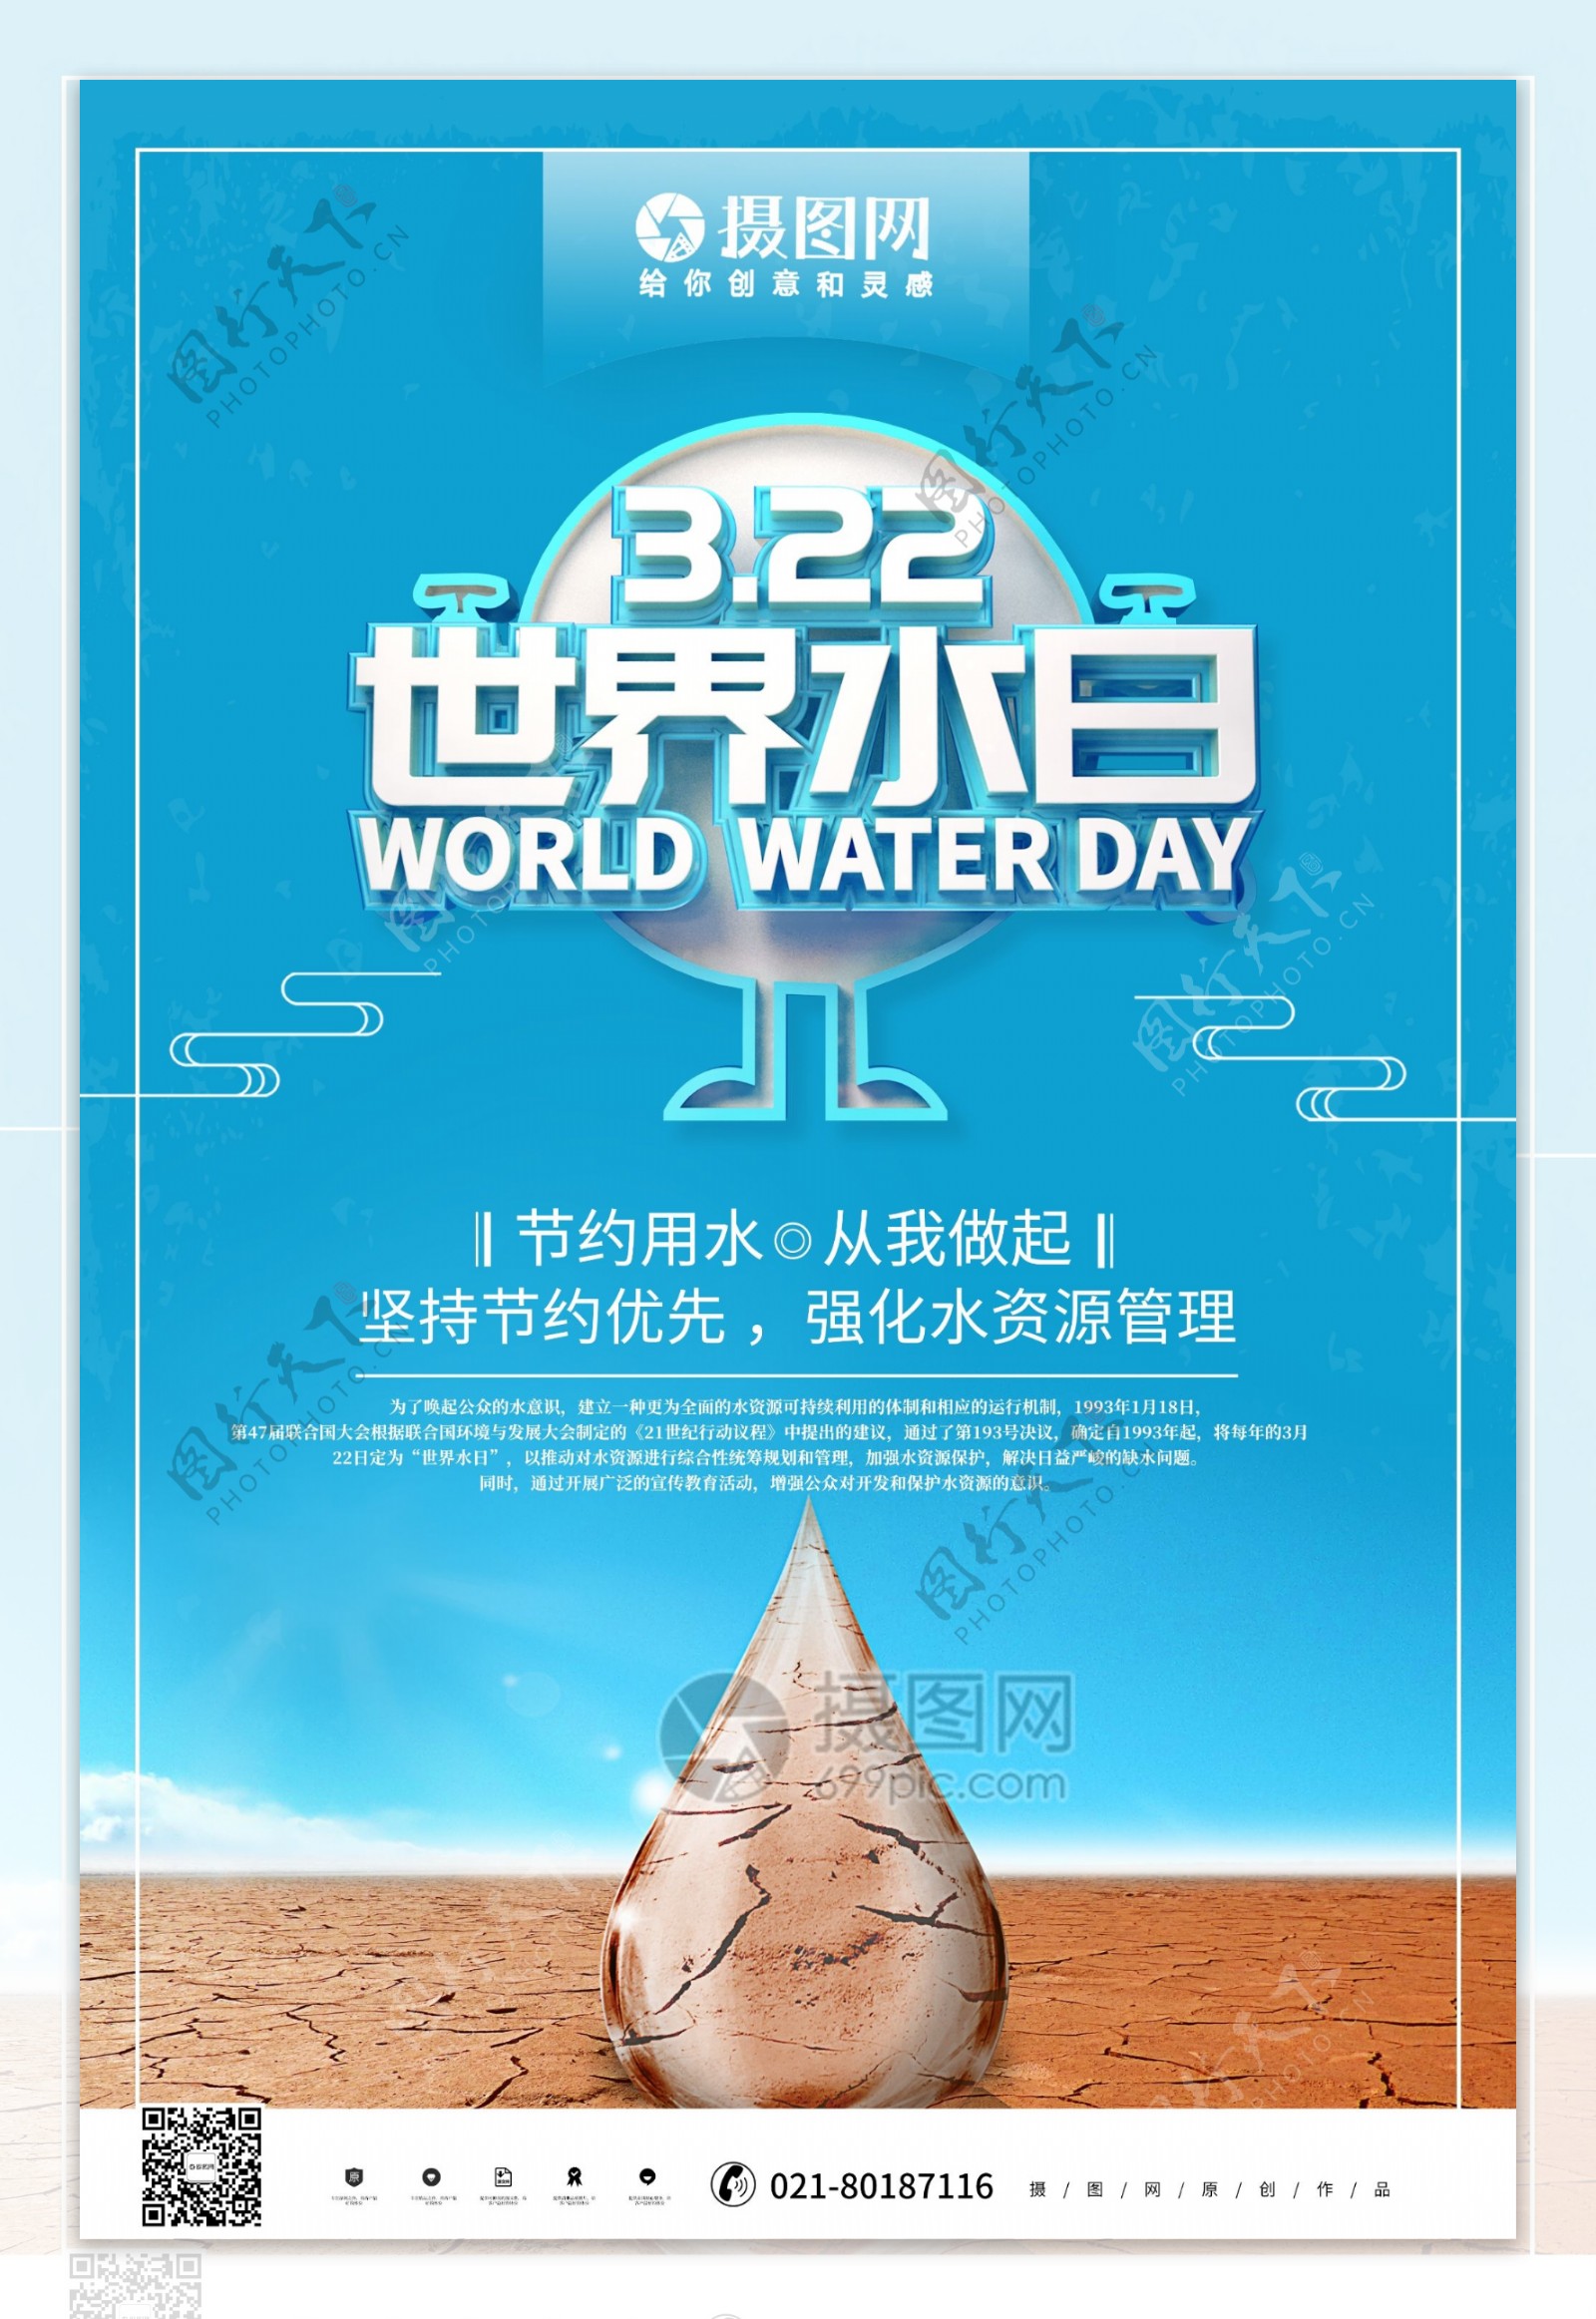 创意蓝色立体世界水日公益宣传海报